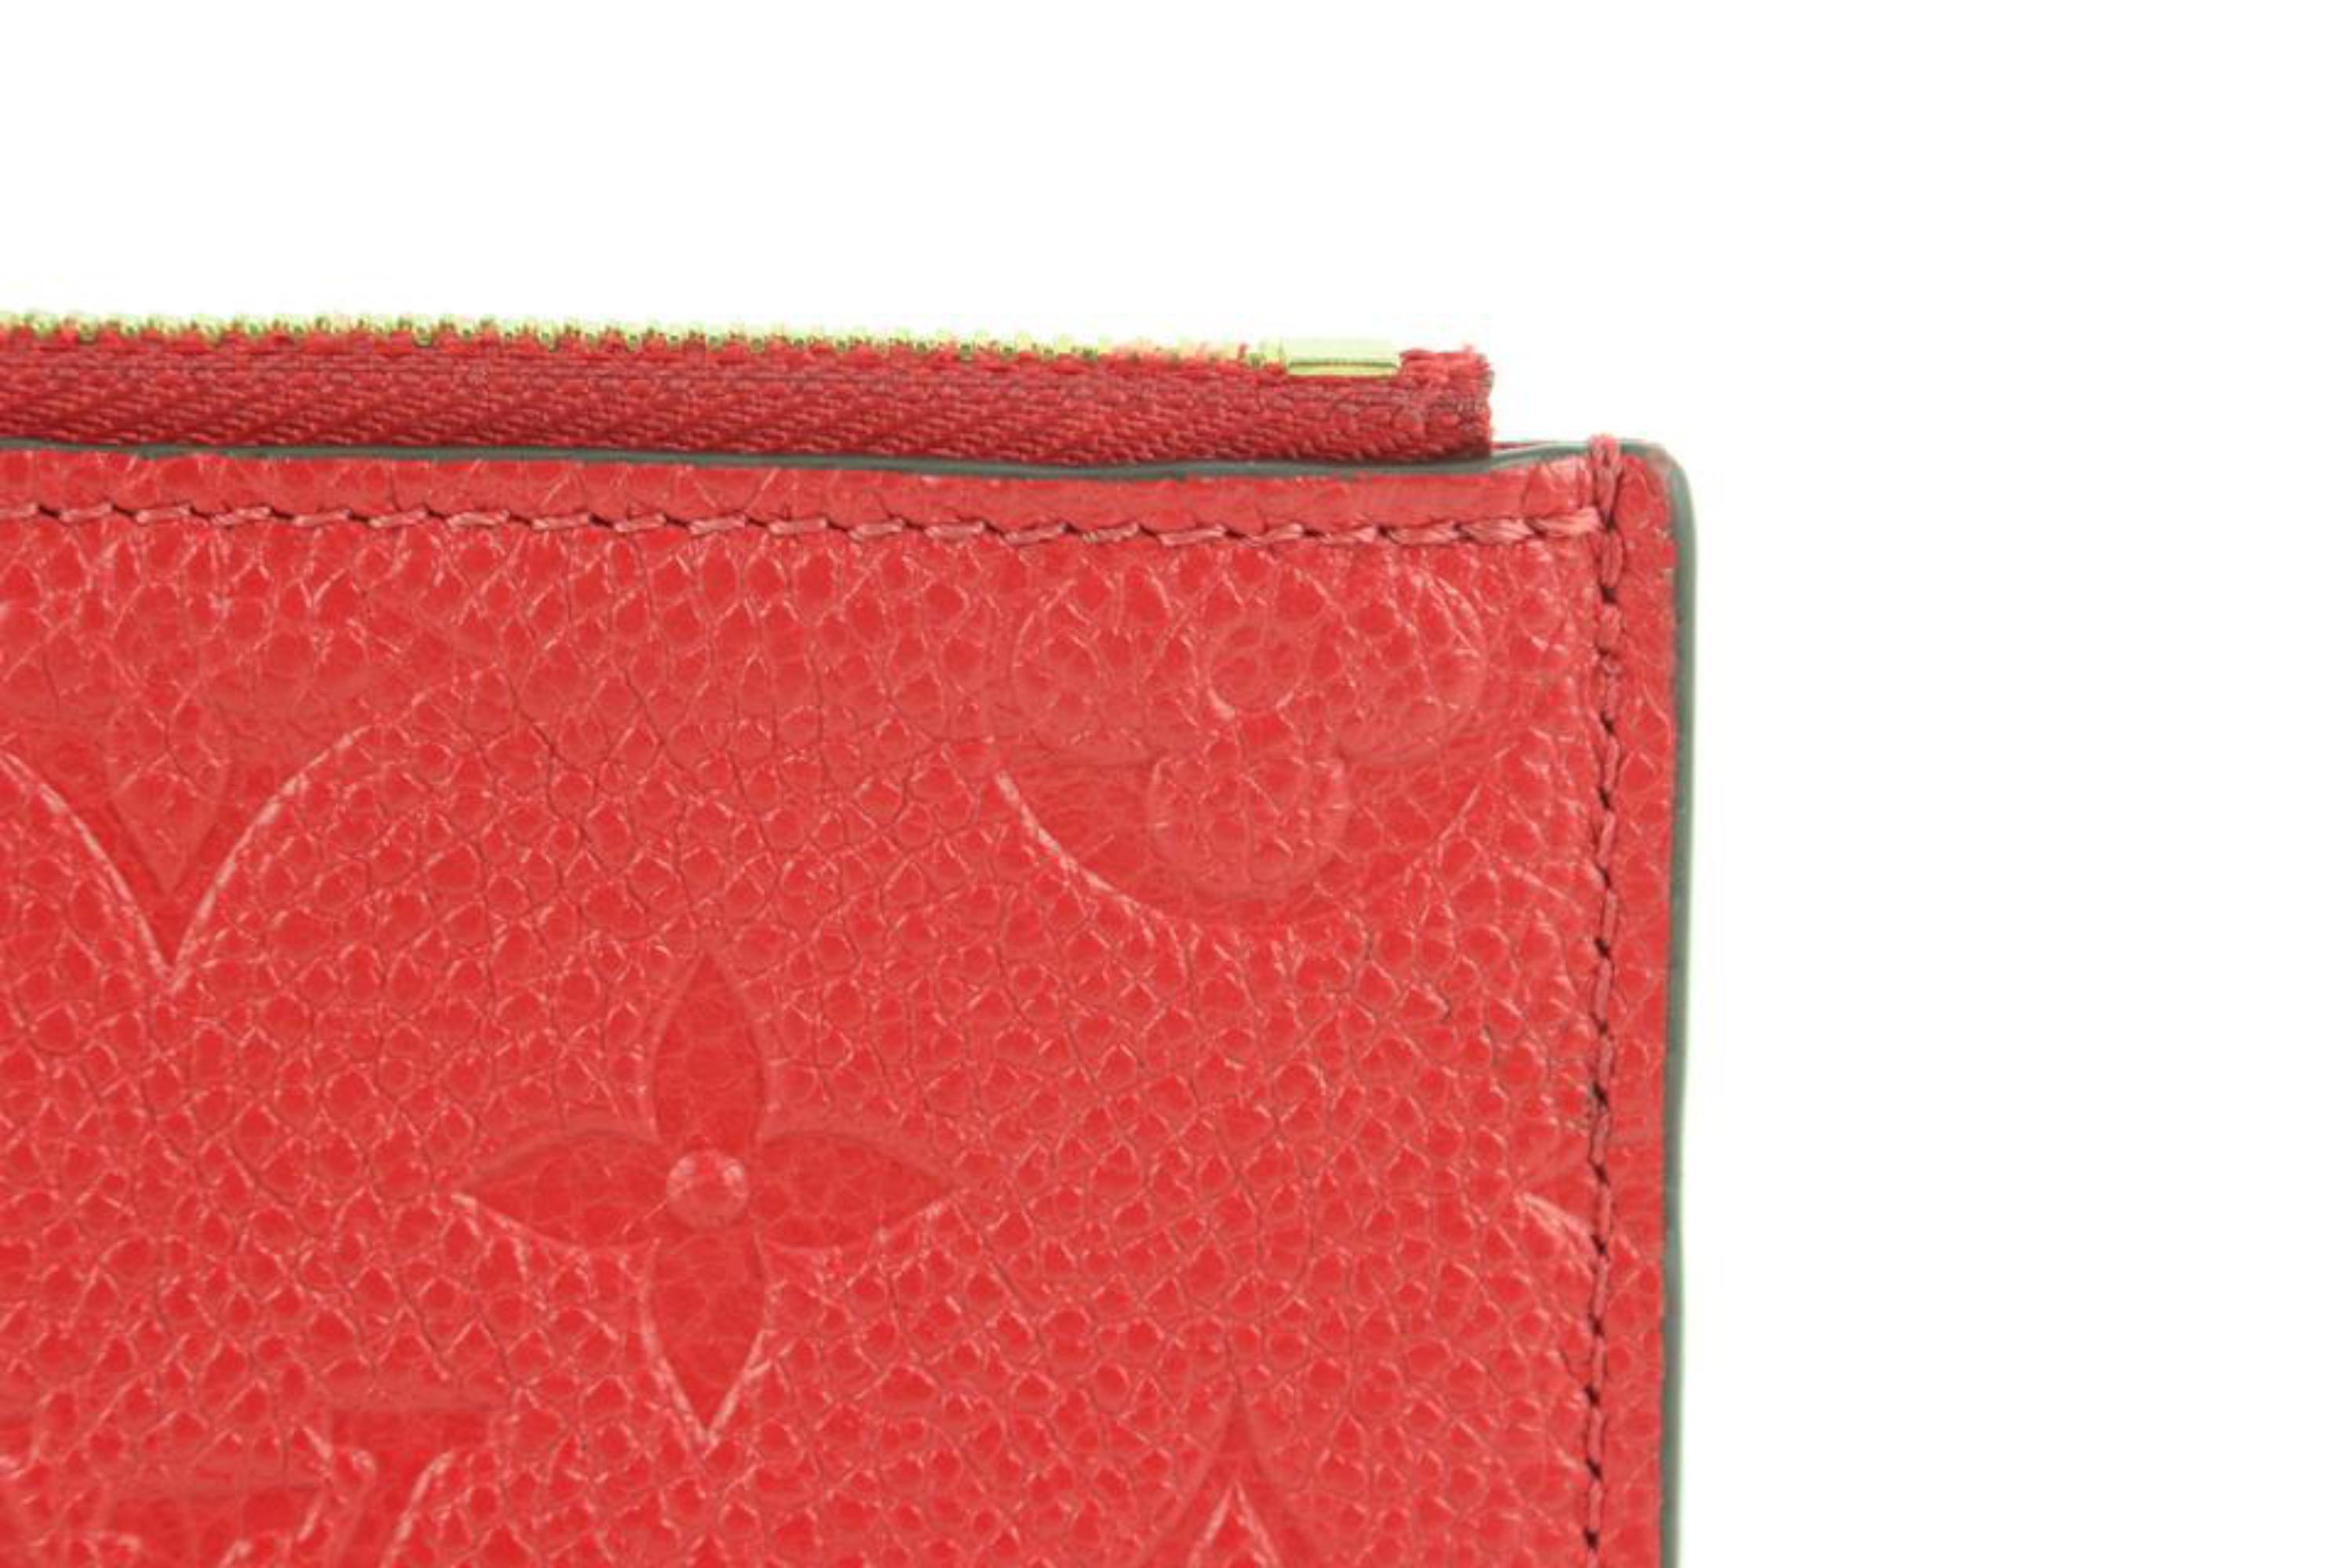 Louis Vuitton Red Leather Monogram Empreinte Felicie Zip Pouch Insert Case 112lv37
Measurements: Length:  7.5